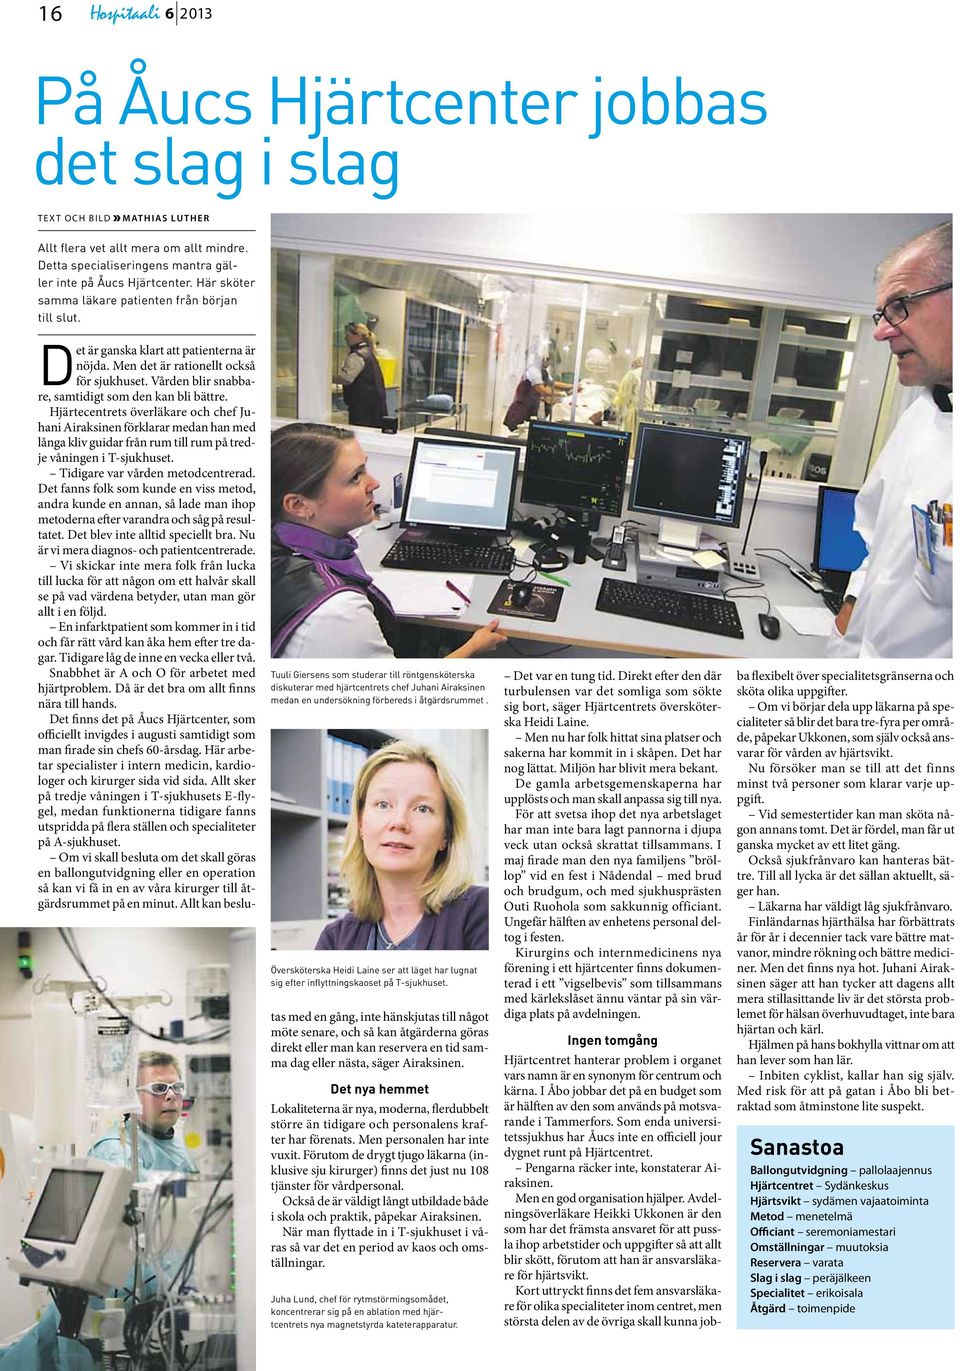 Tuuli Giersens som studerar till röntgensköterska diskuterar med hjärtcentrets chef Juhani Airaksinen medan en undersökning förbereds i åtgärdsrummet.